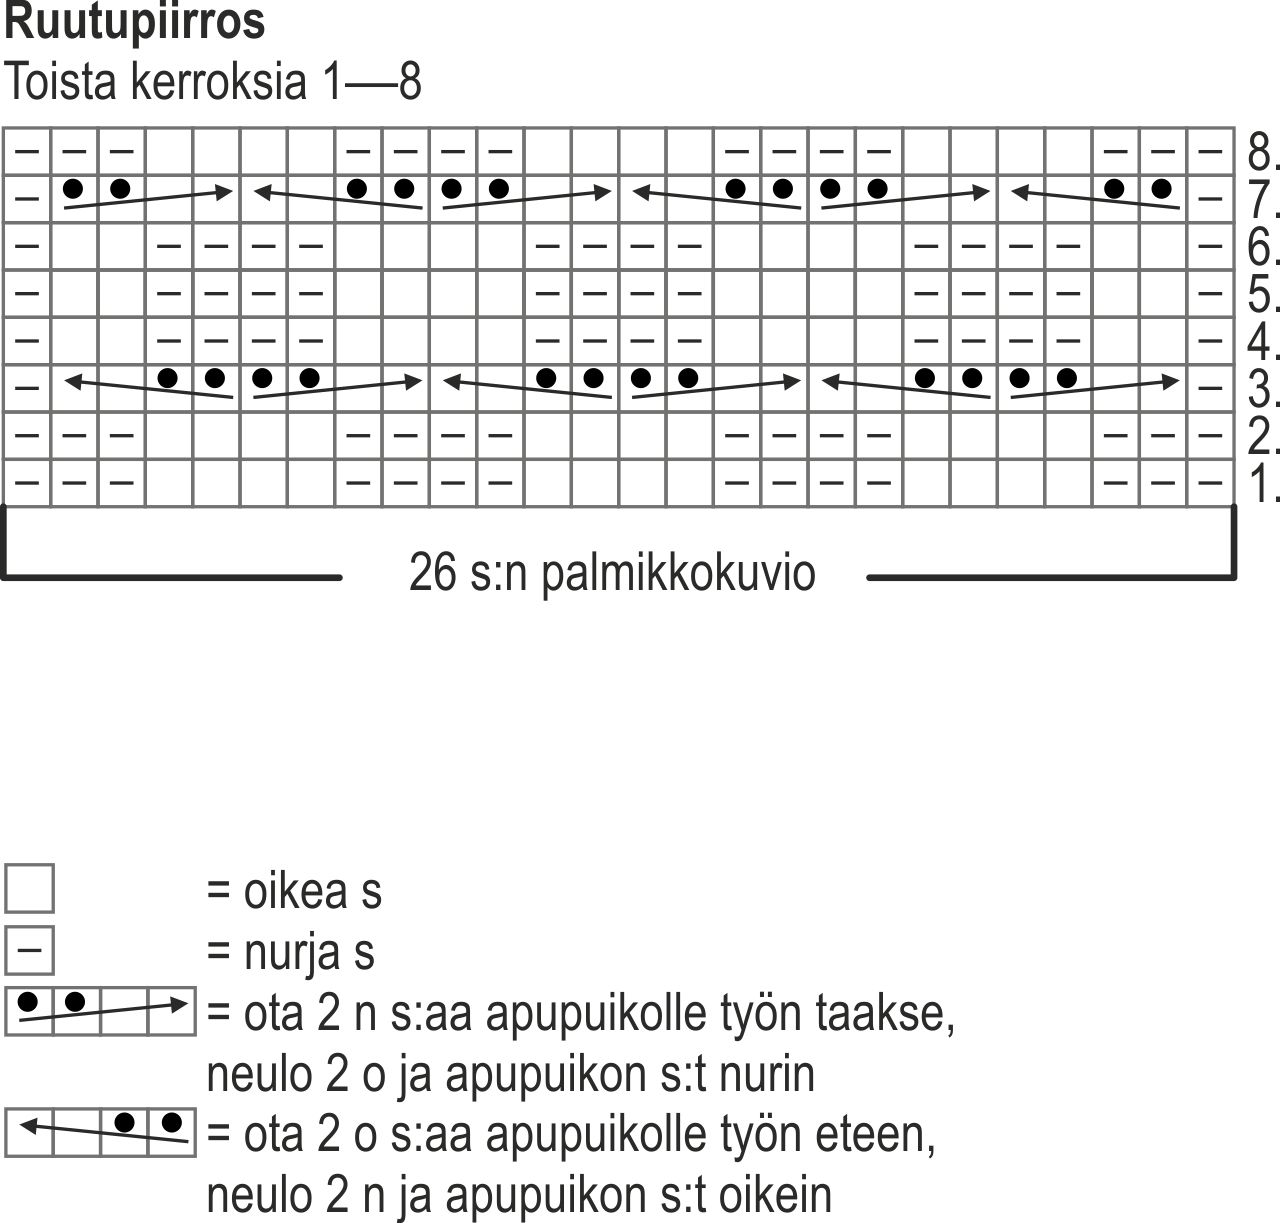 Neulotut Vaahtokarkki-villasukat Instruction 1